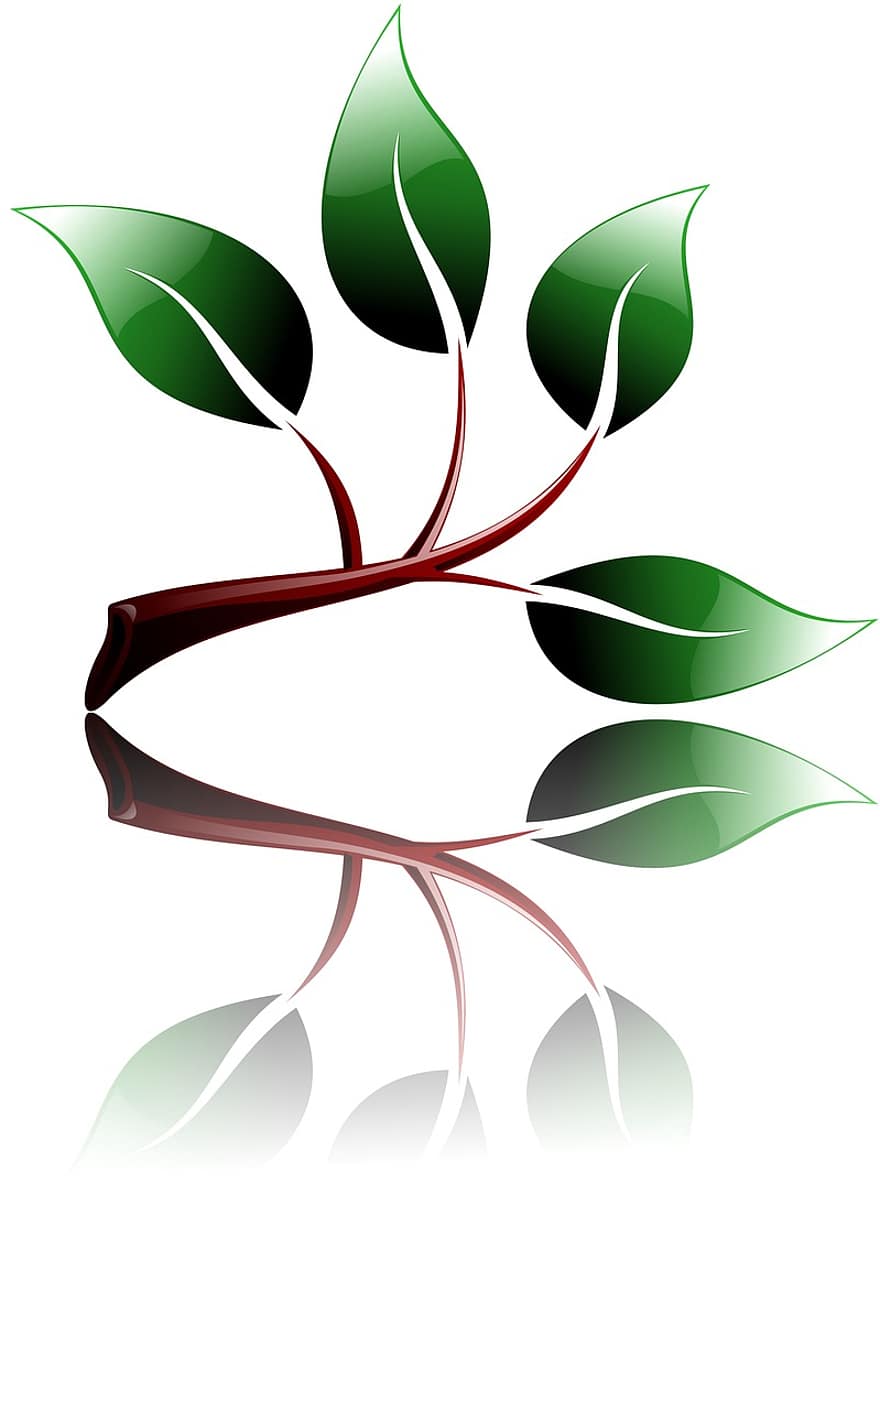 filiāle, ekoloģiski, vidi, zaļa, augt, izolēts, lapas, raksturs, augu, asns, simbols